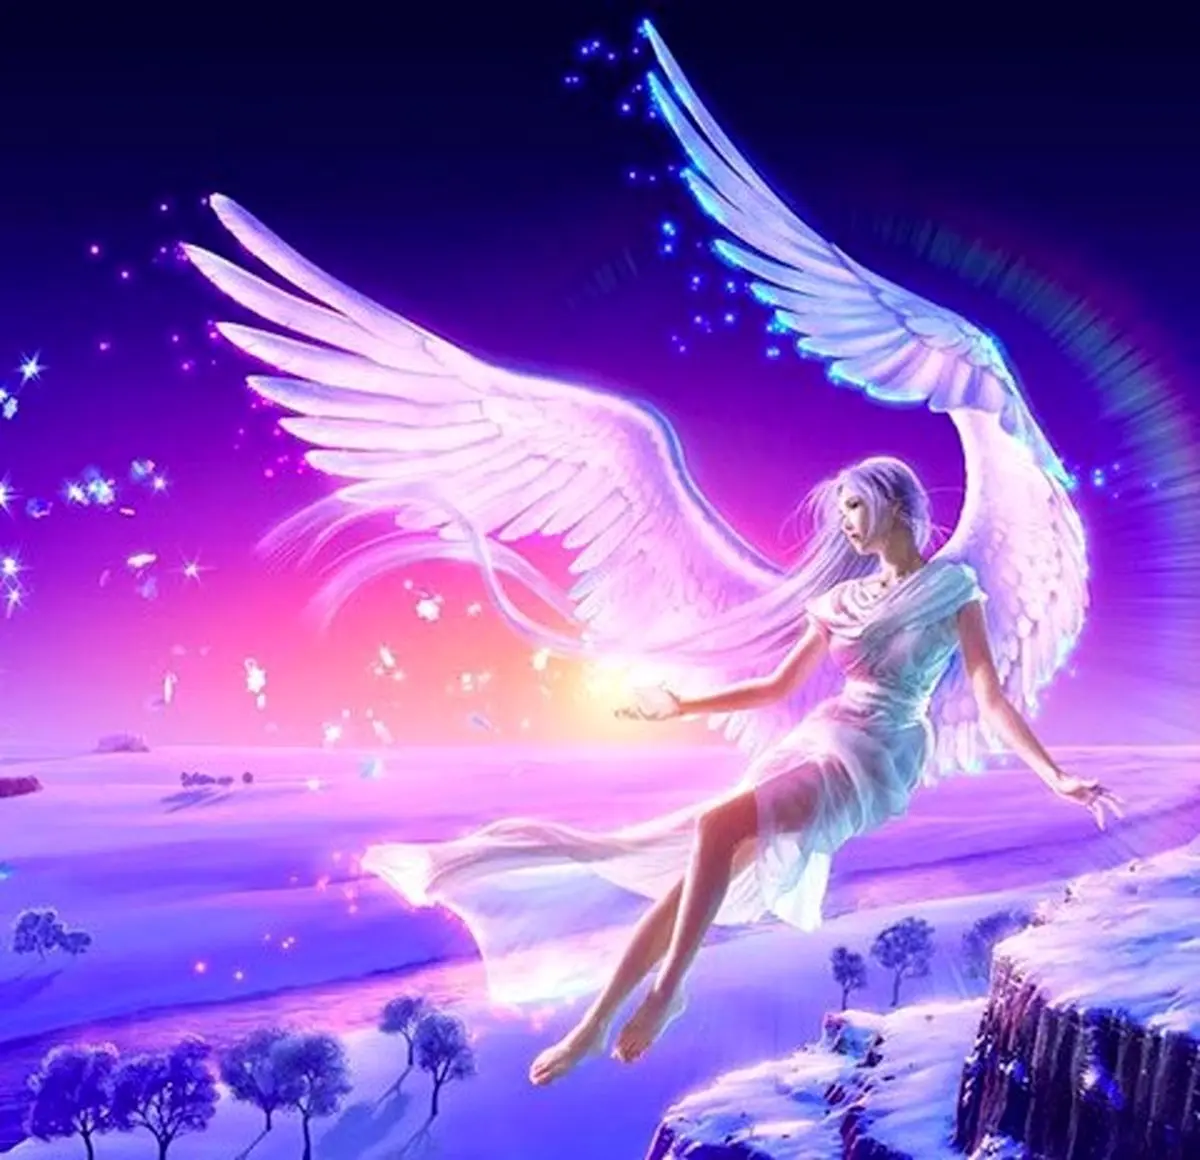 فال فرشتگان 6 تیرماه | فرشتگان برای شما چه پیام مثبتی دارند؟